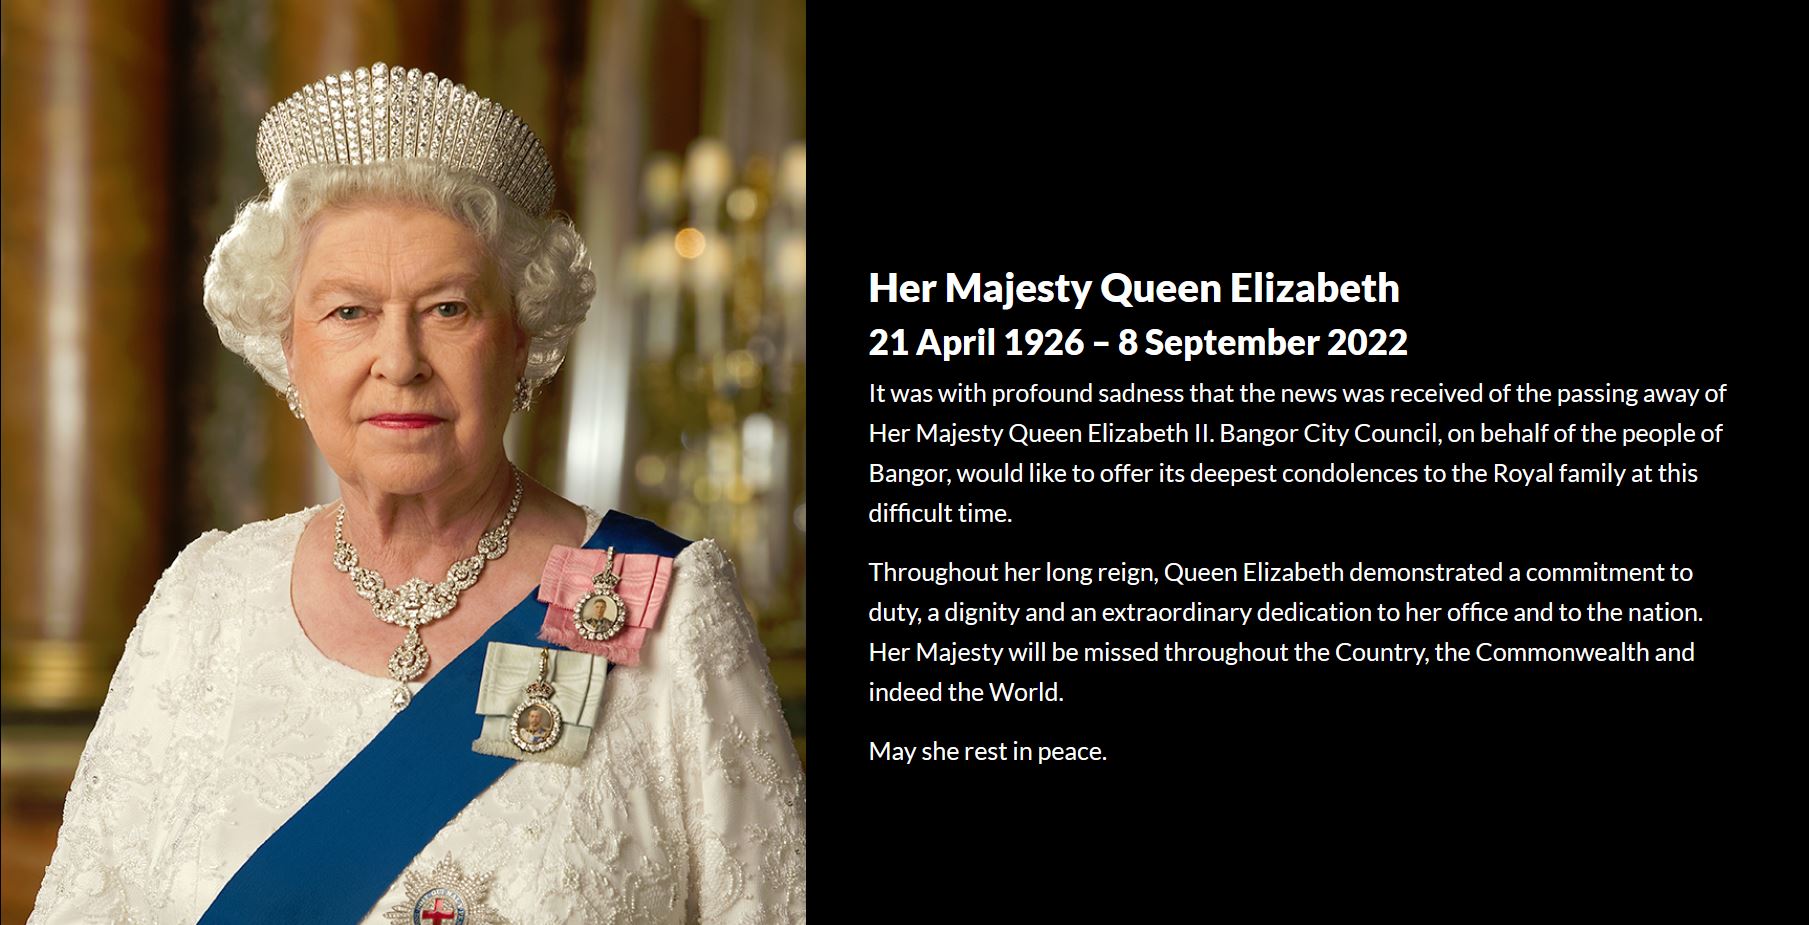 Her Majesty Queen Elizabeth 21 April 1926 – 8 September 2022